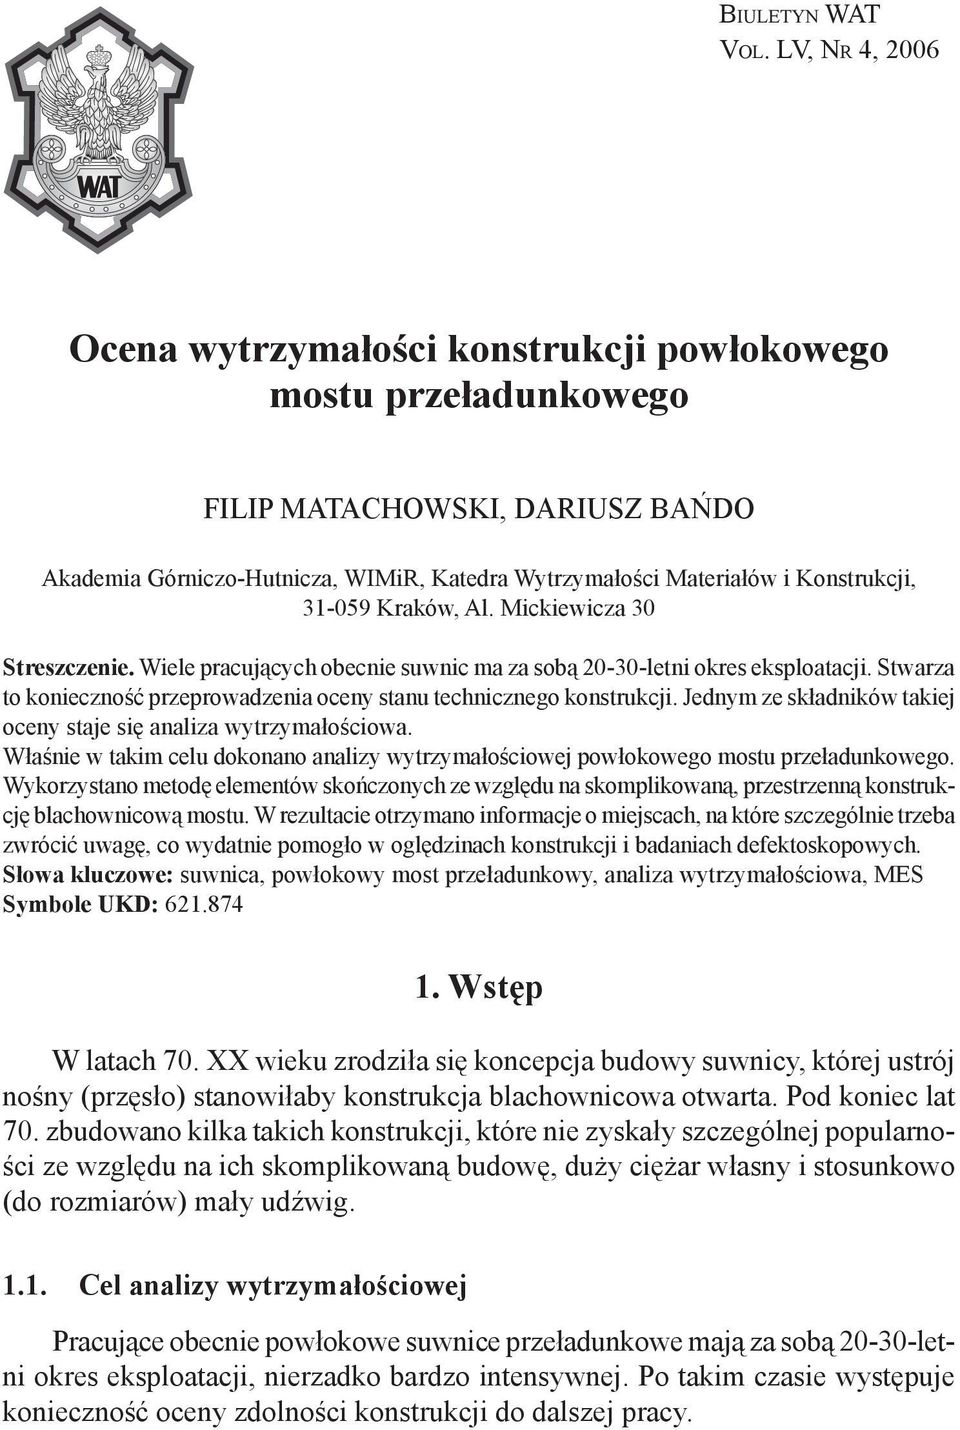 31-059 Kraków, Al. Mickiewicza 30 Streszczenie. Wiele pracujących obecnie suwnic ma za sobą 20-30-letni okres eksploatacji. Stwarza to konieczność przeprowadzenia oceny stanu technicznego konstrukcji.